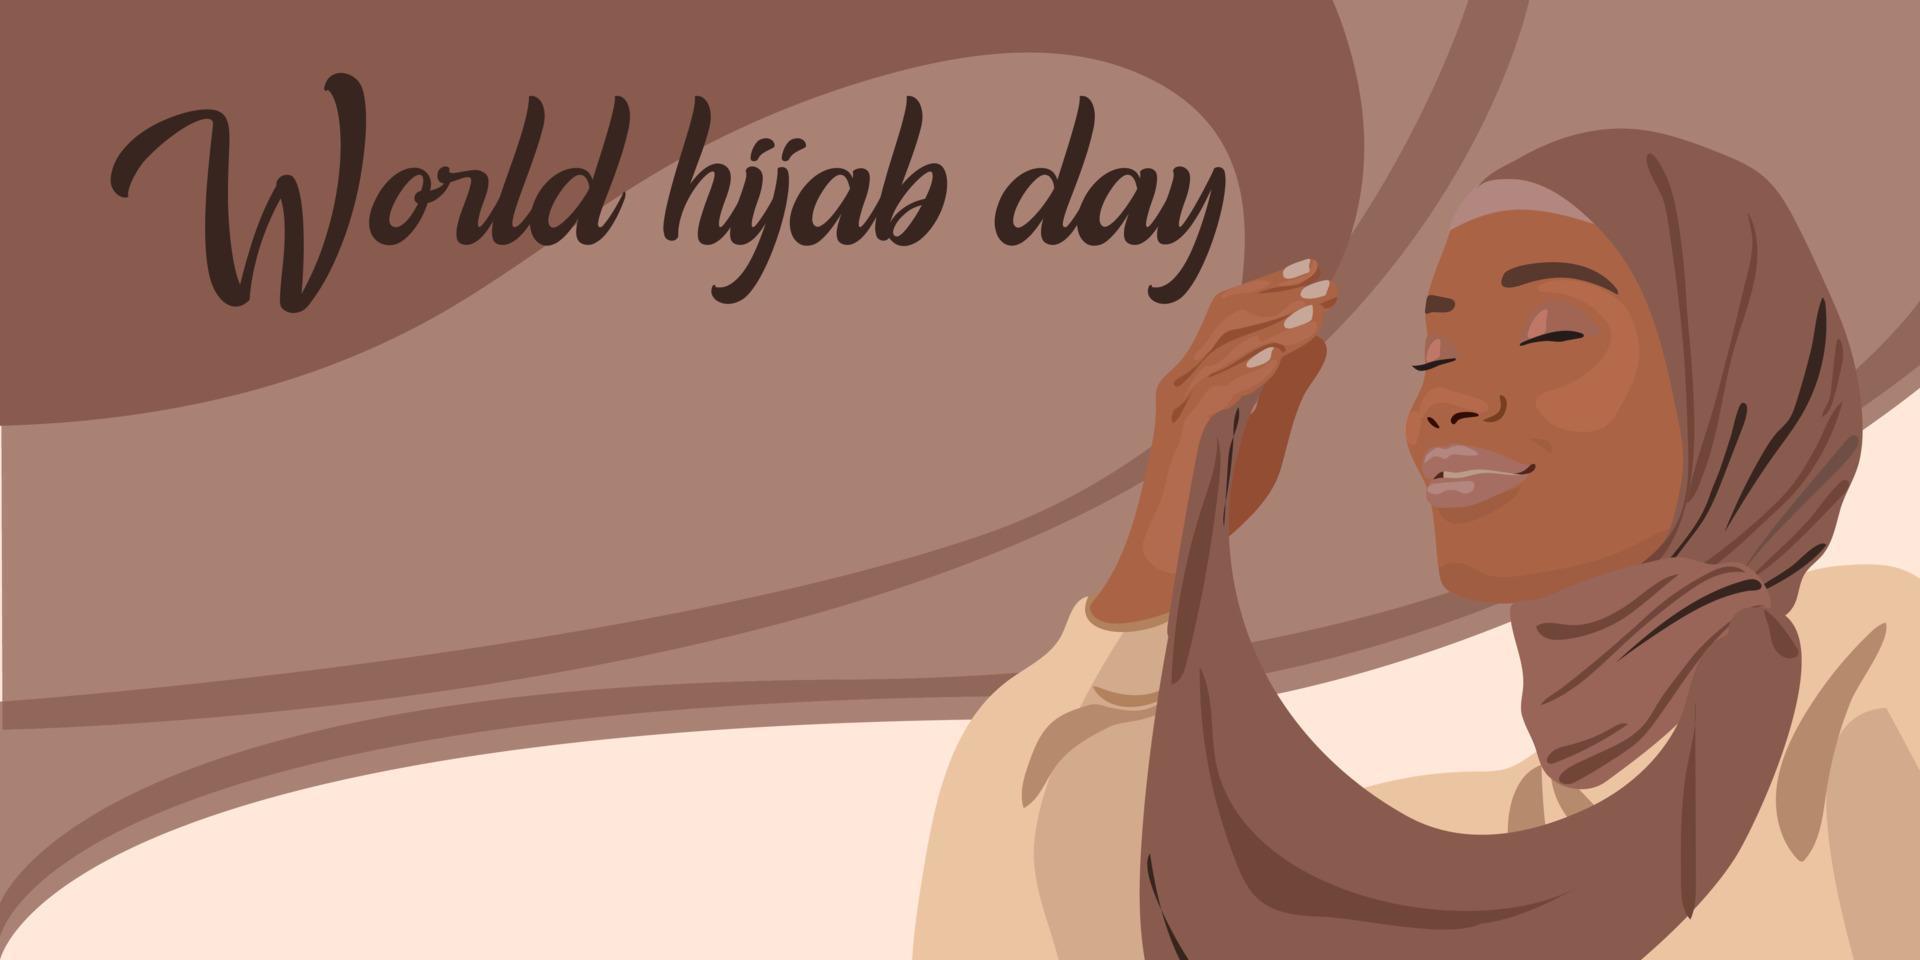 dia mundial do hijab. uma mulher muçulmana em um hijab. mulher árabe. 1 de fevereiro. feliz dia mundial da mulher em hijab. ilustração em vetor de uma garota com um lenço na cabeça. A bandeira